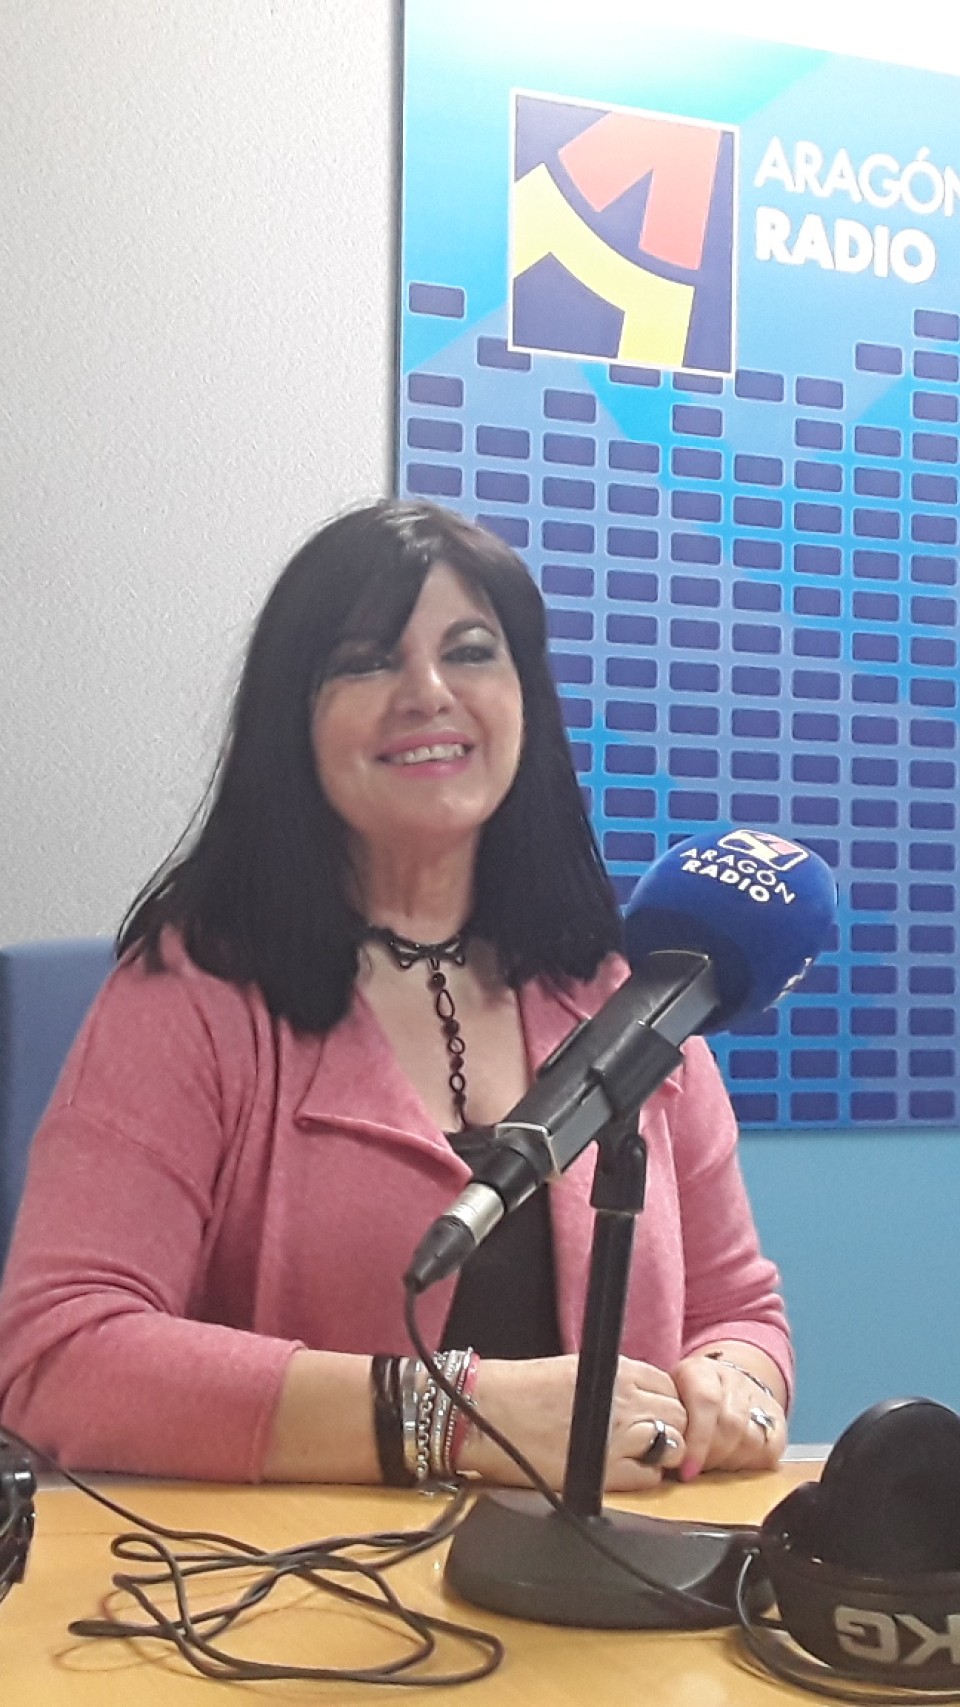 Imagen Entrevista a Mar Blanco en su visita a Aragón Radio